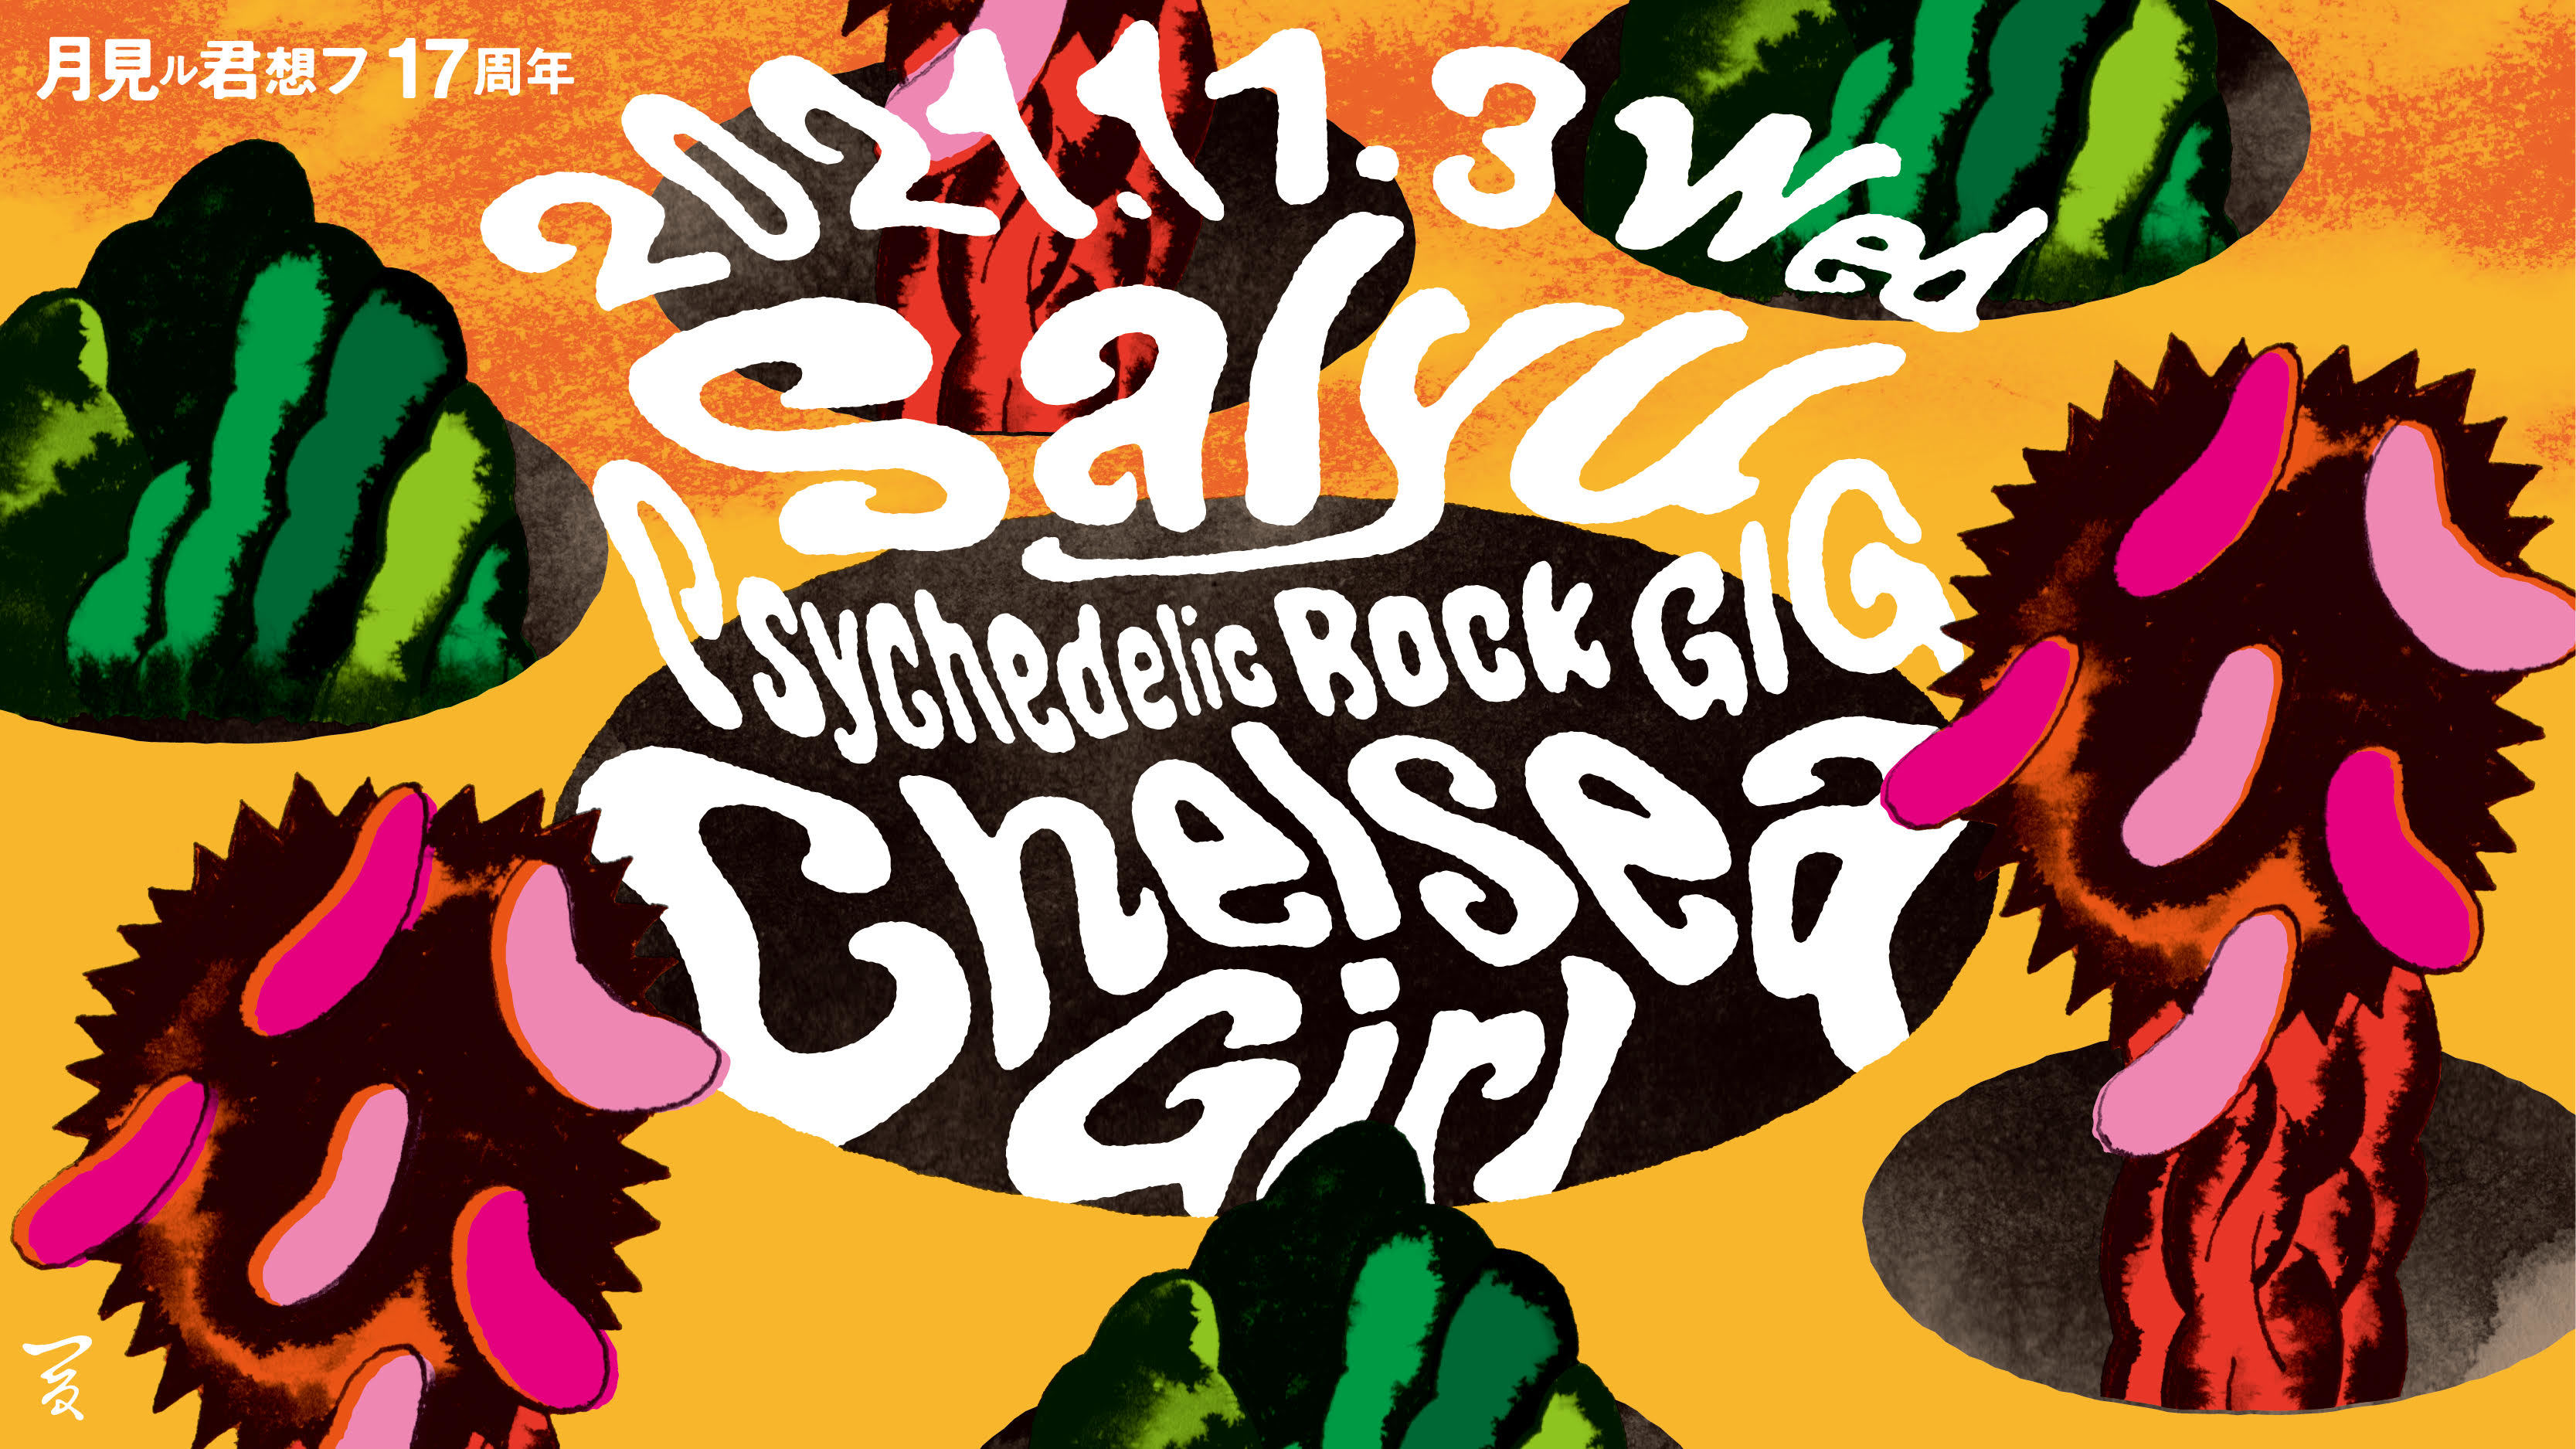 Salyu Psychedelic Rock GIG -Chelsea Girl- フライヤー